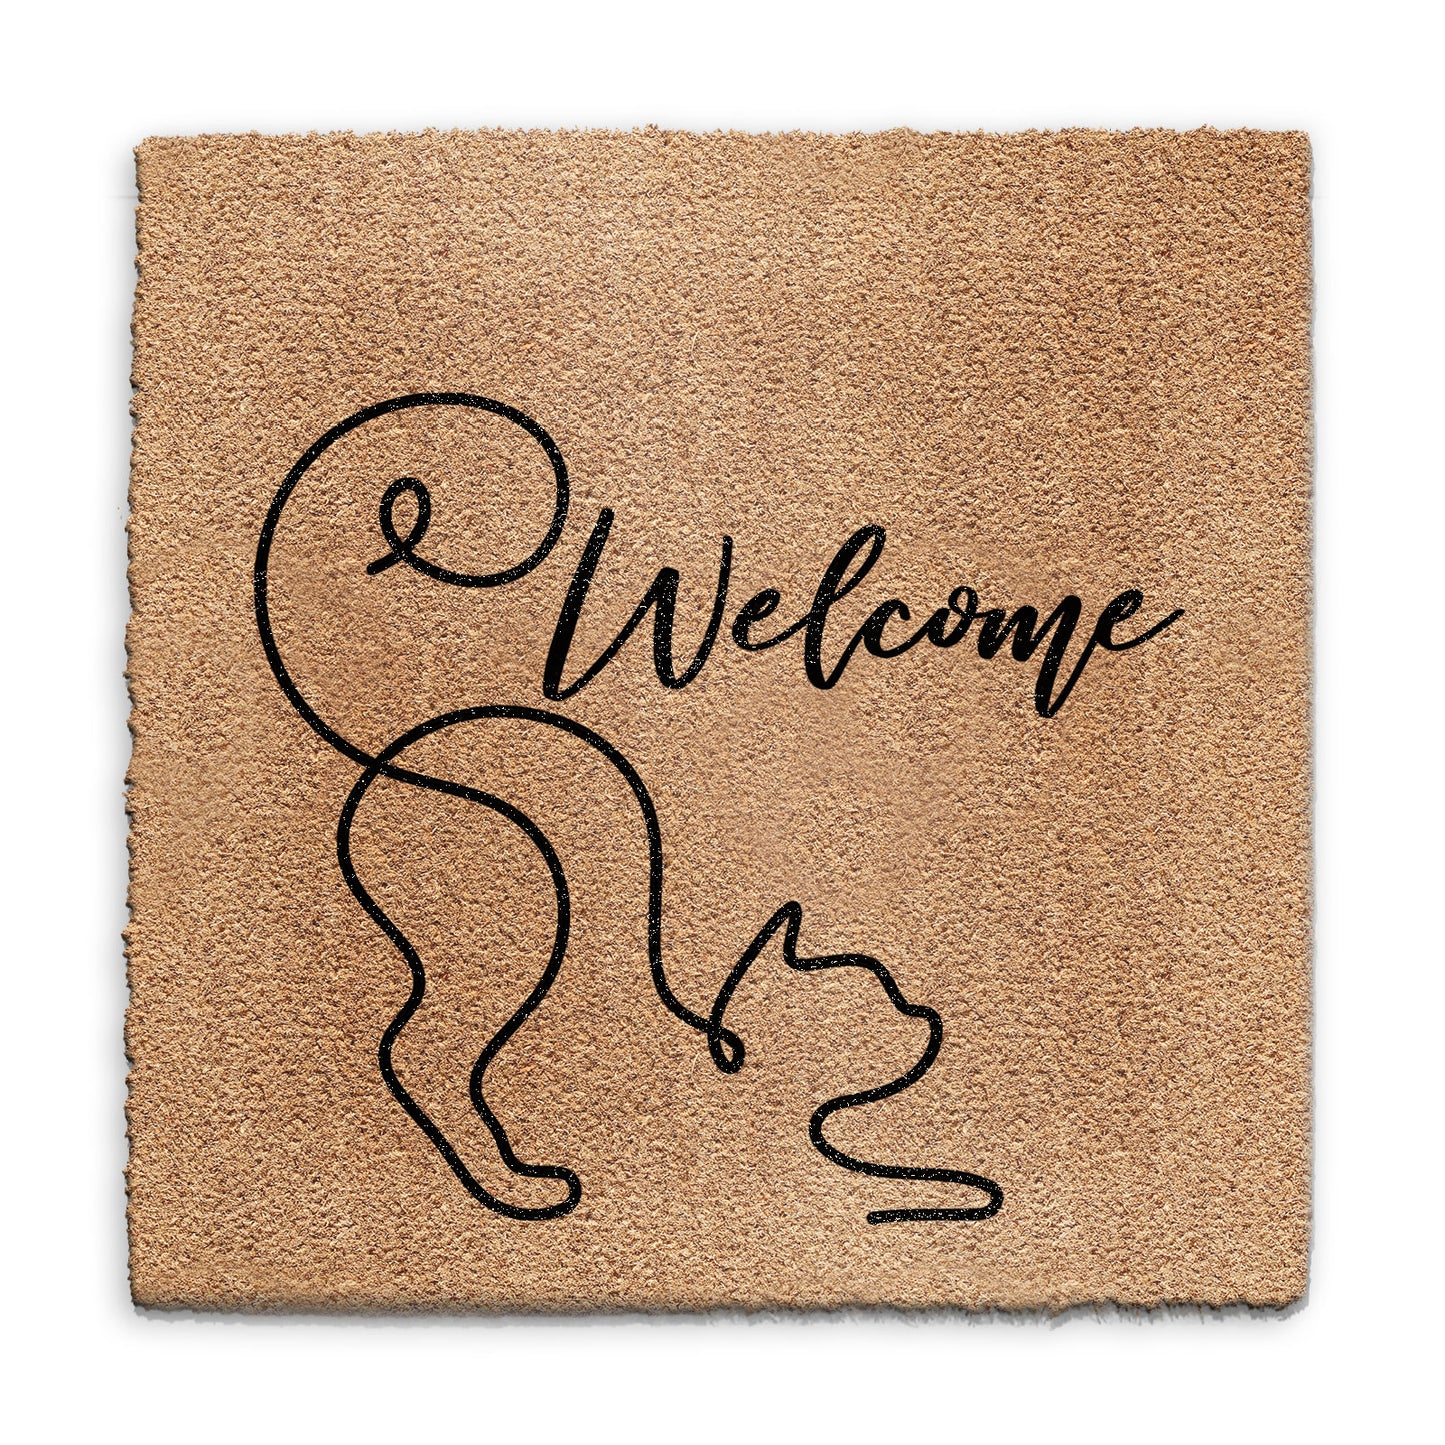 Coir Doormat - Curly Cat Welcome